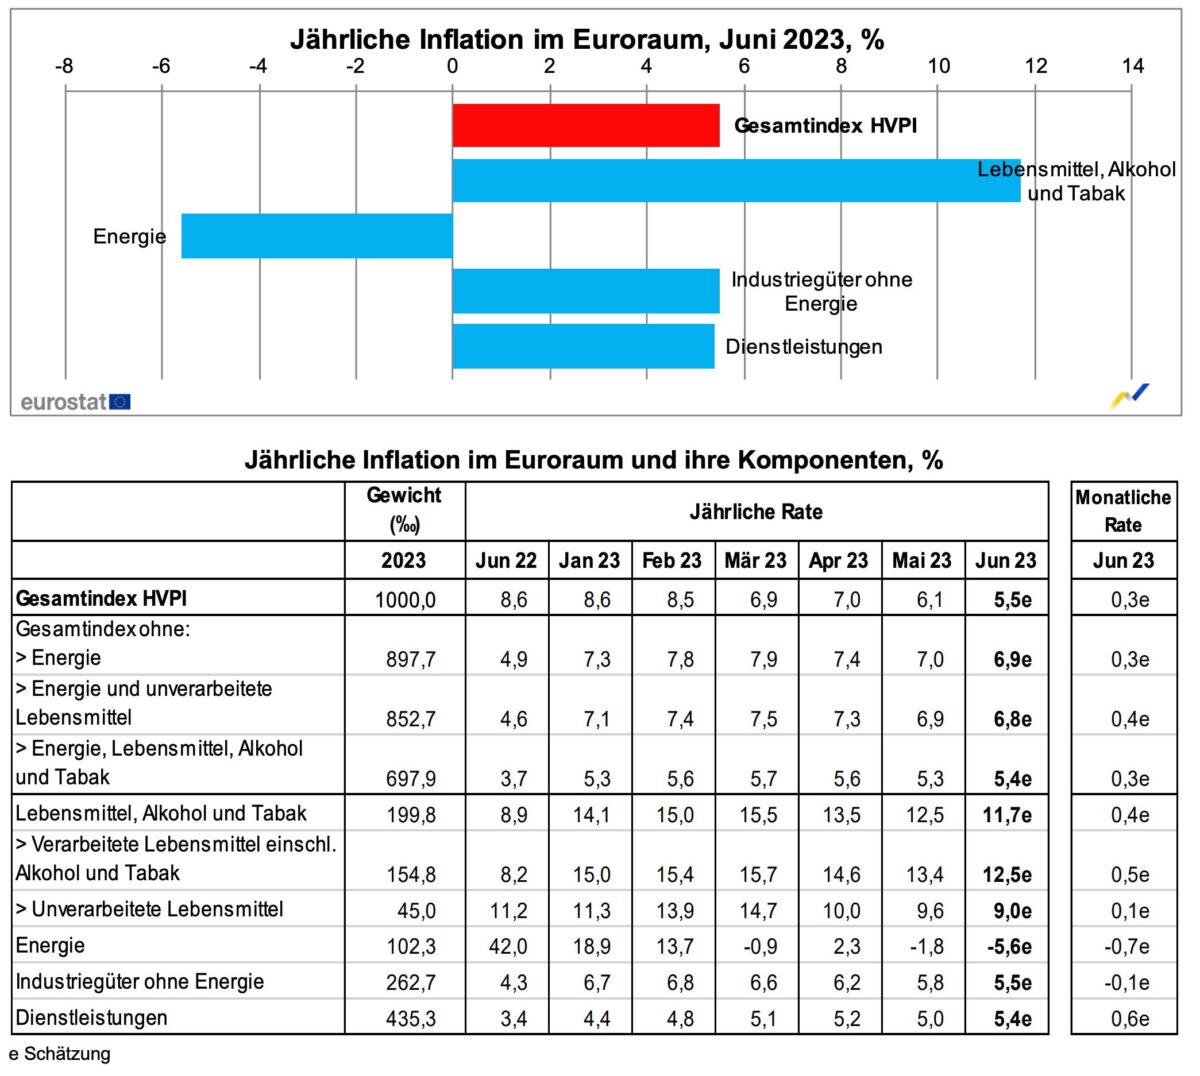 Details zur Inflation in der Eurozone